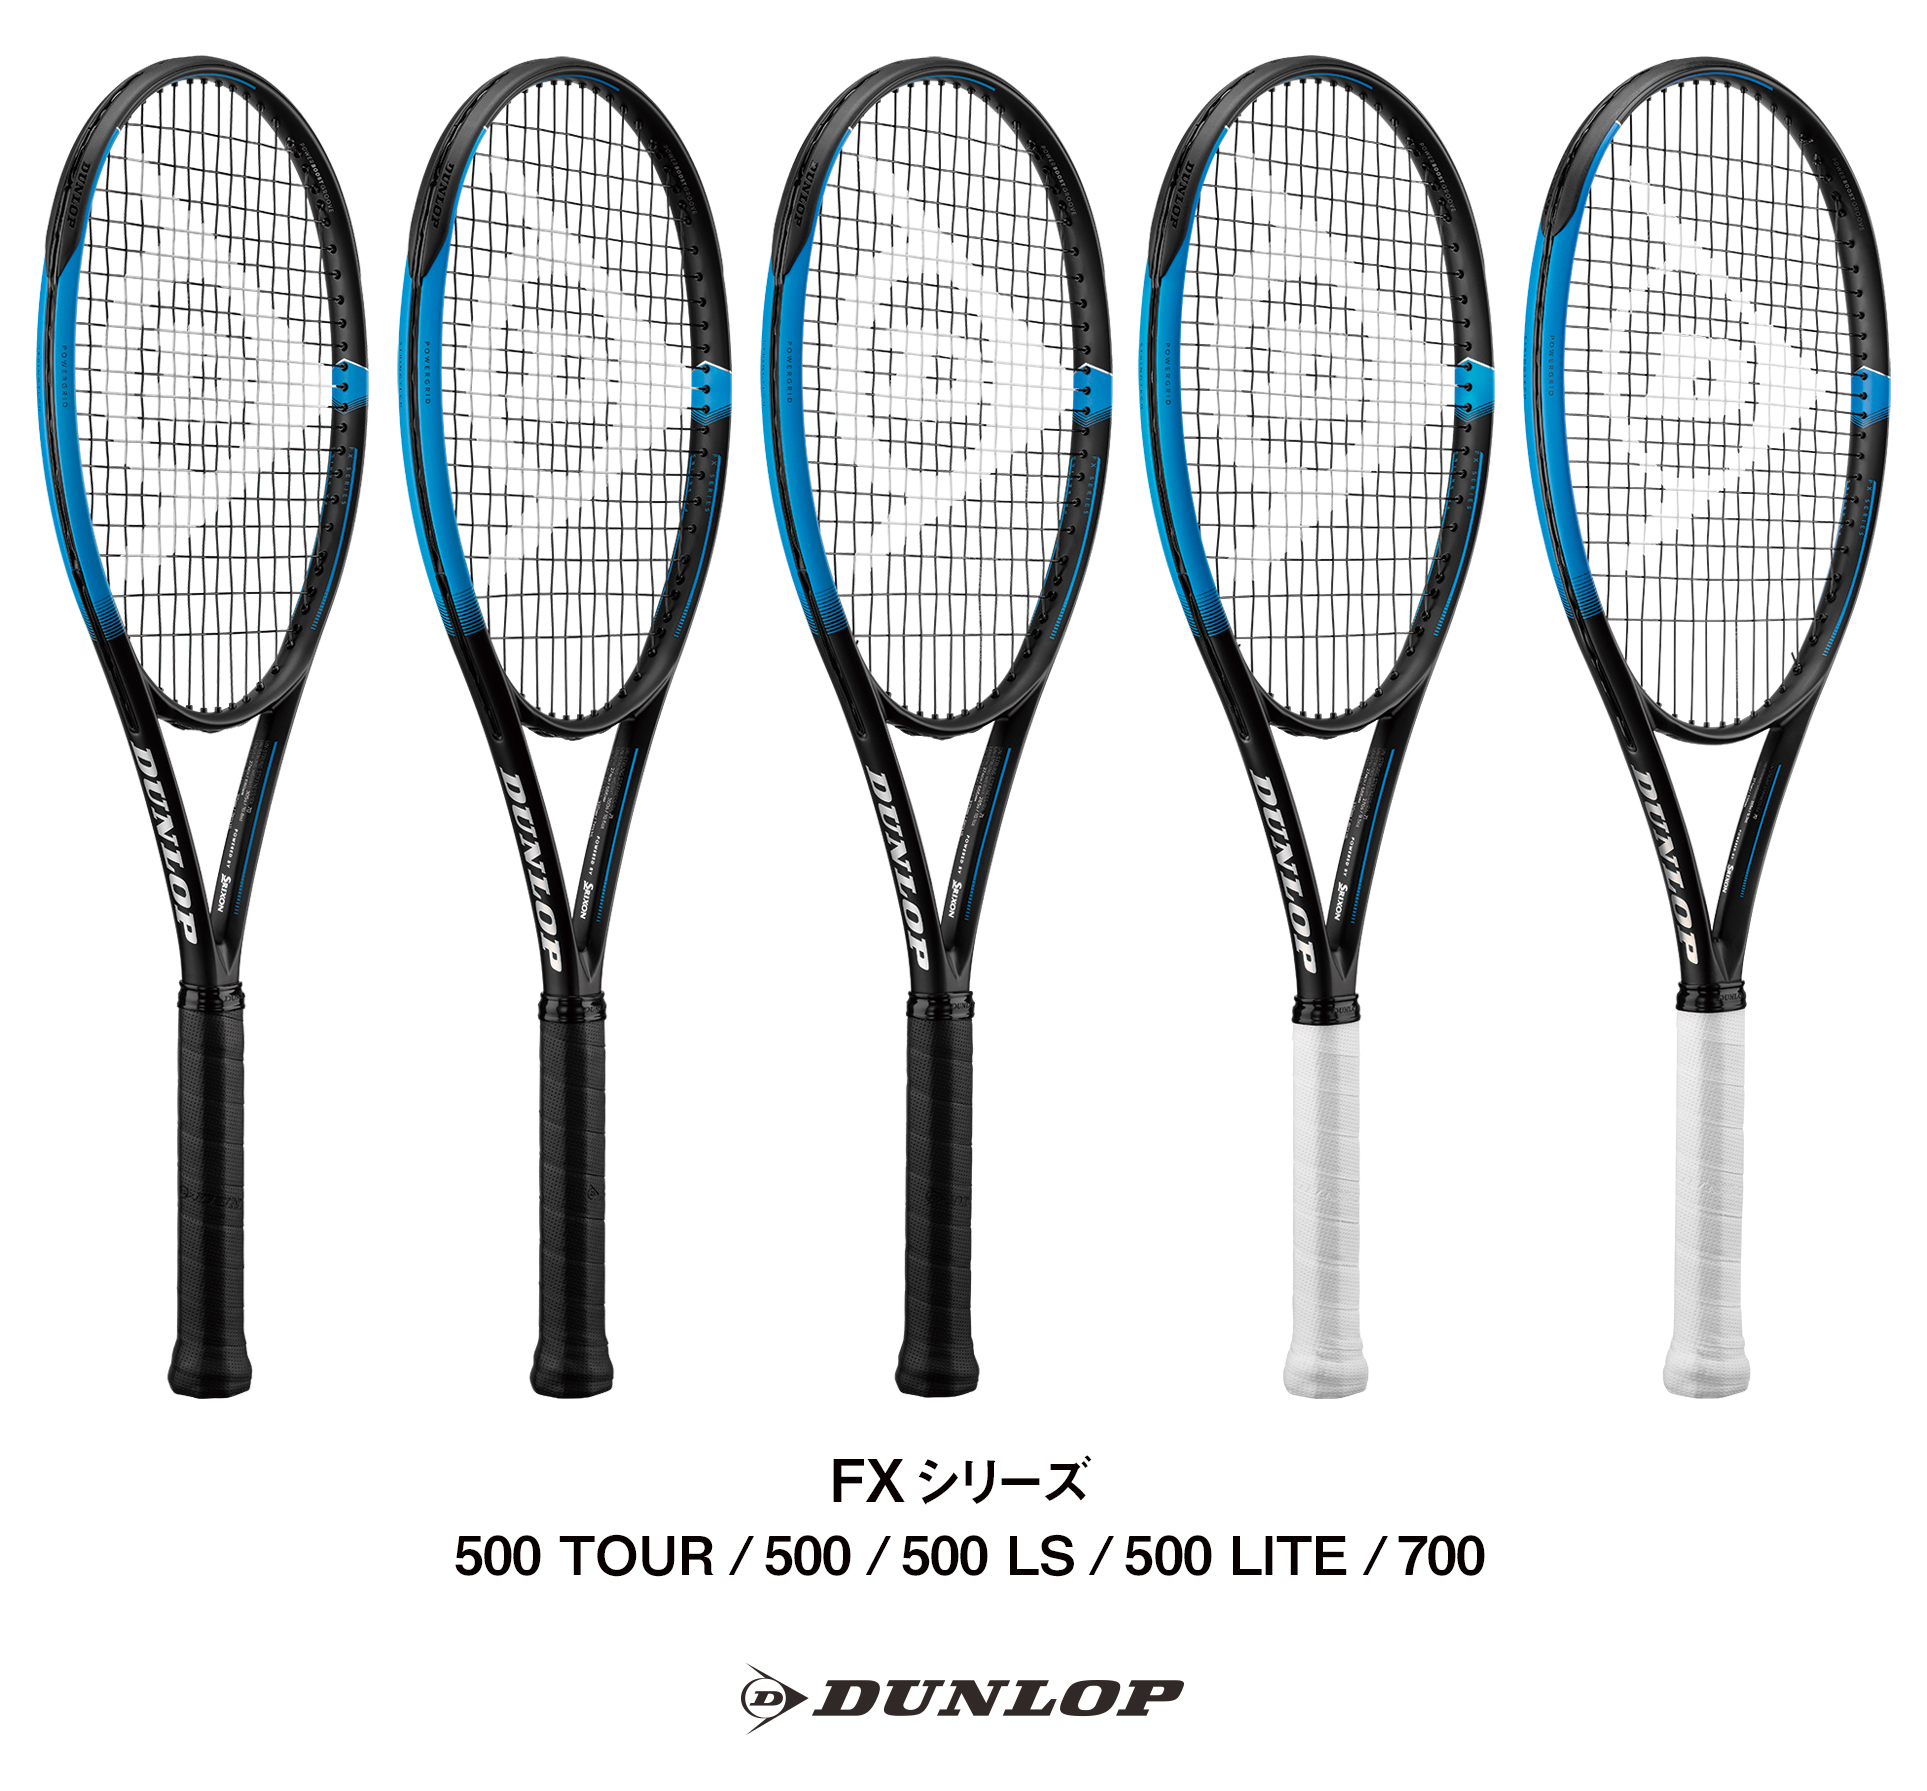 ダンロップテニスラケット「FX」シリーズ5機種を新発売 ～新形状、新 